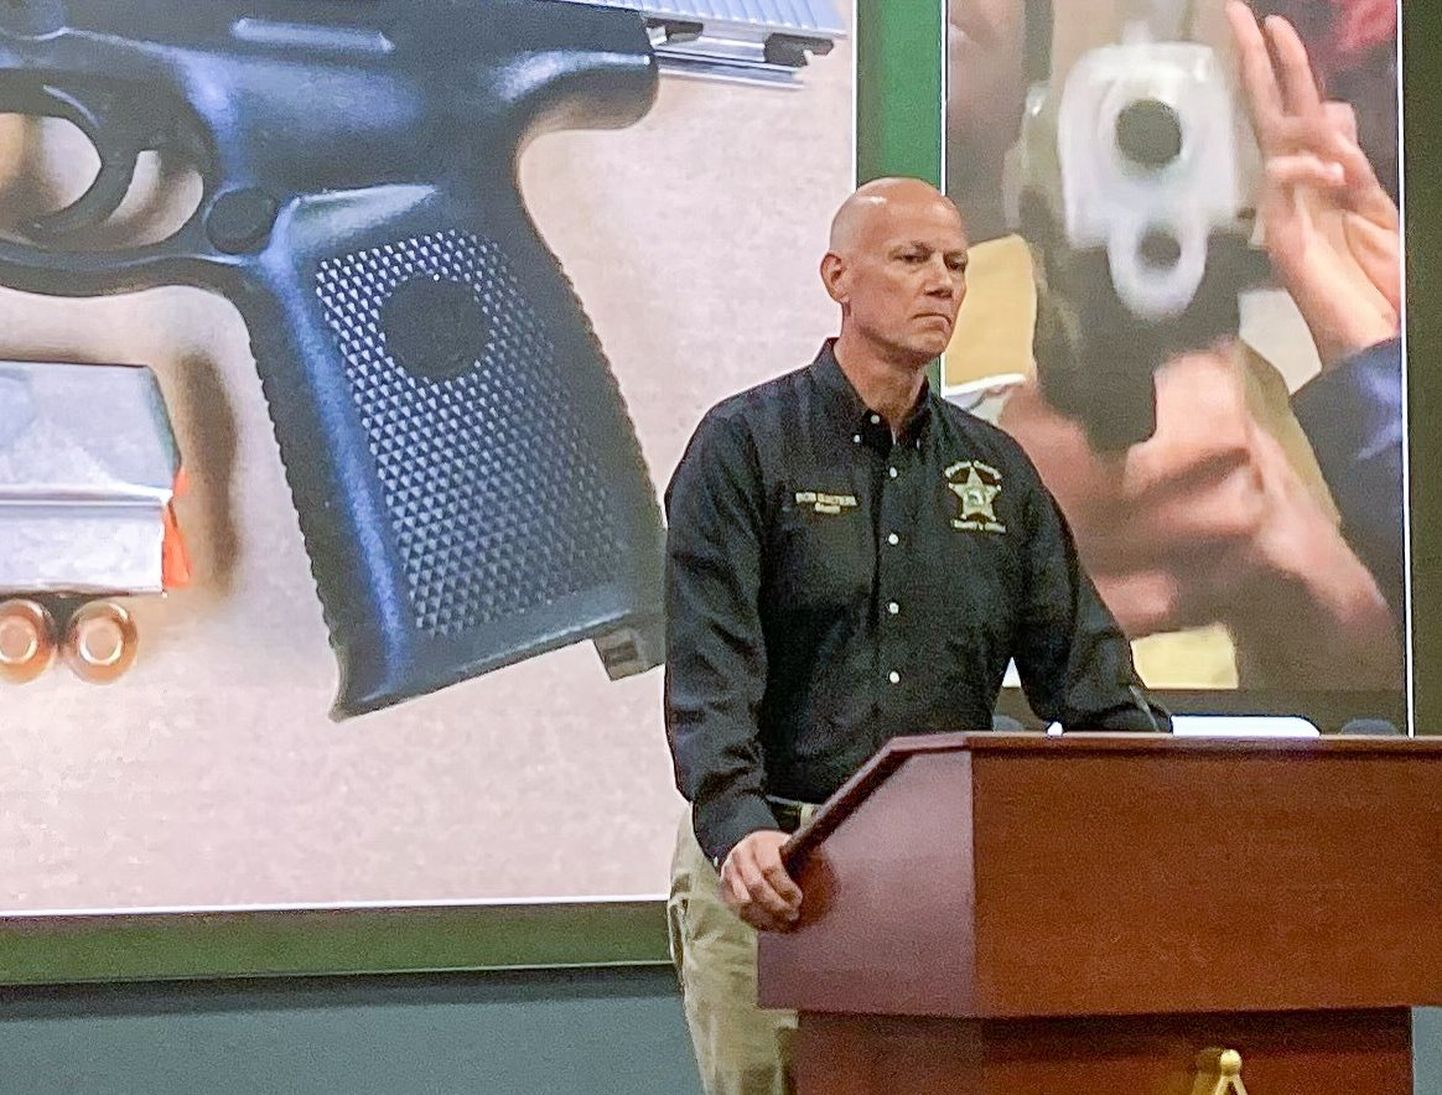 Пресс-конференция региональной полиции штата Флорида, на которой объясняется предыстория семейного конфликта и стрельбы.